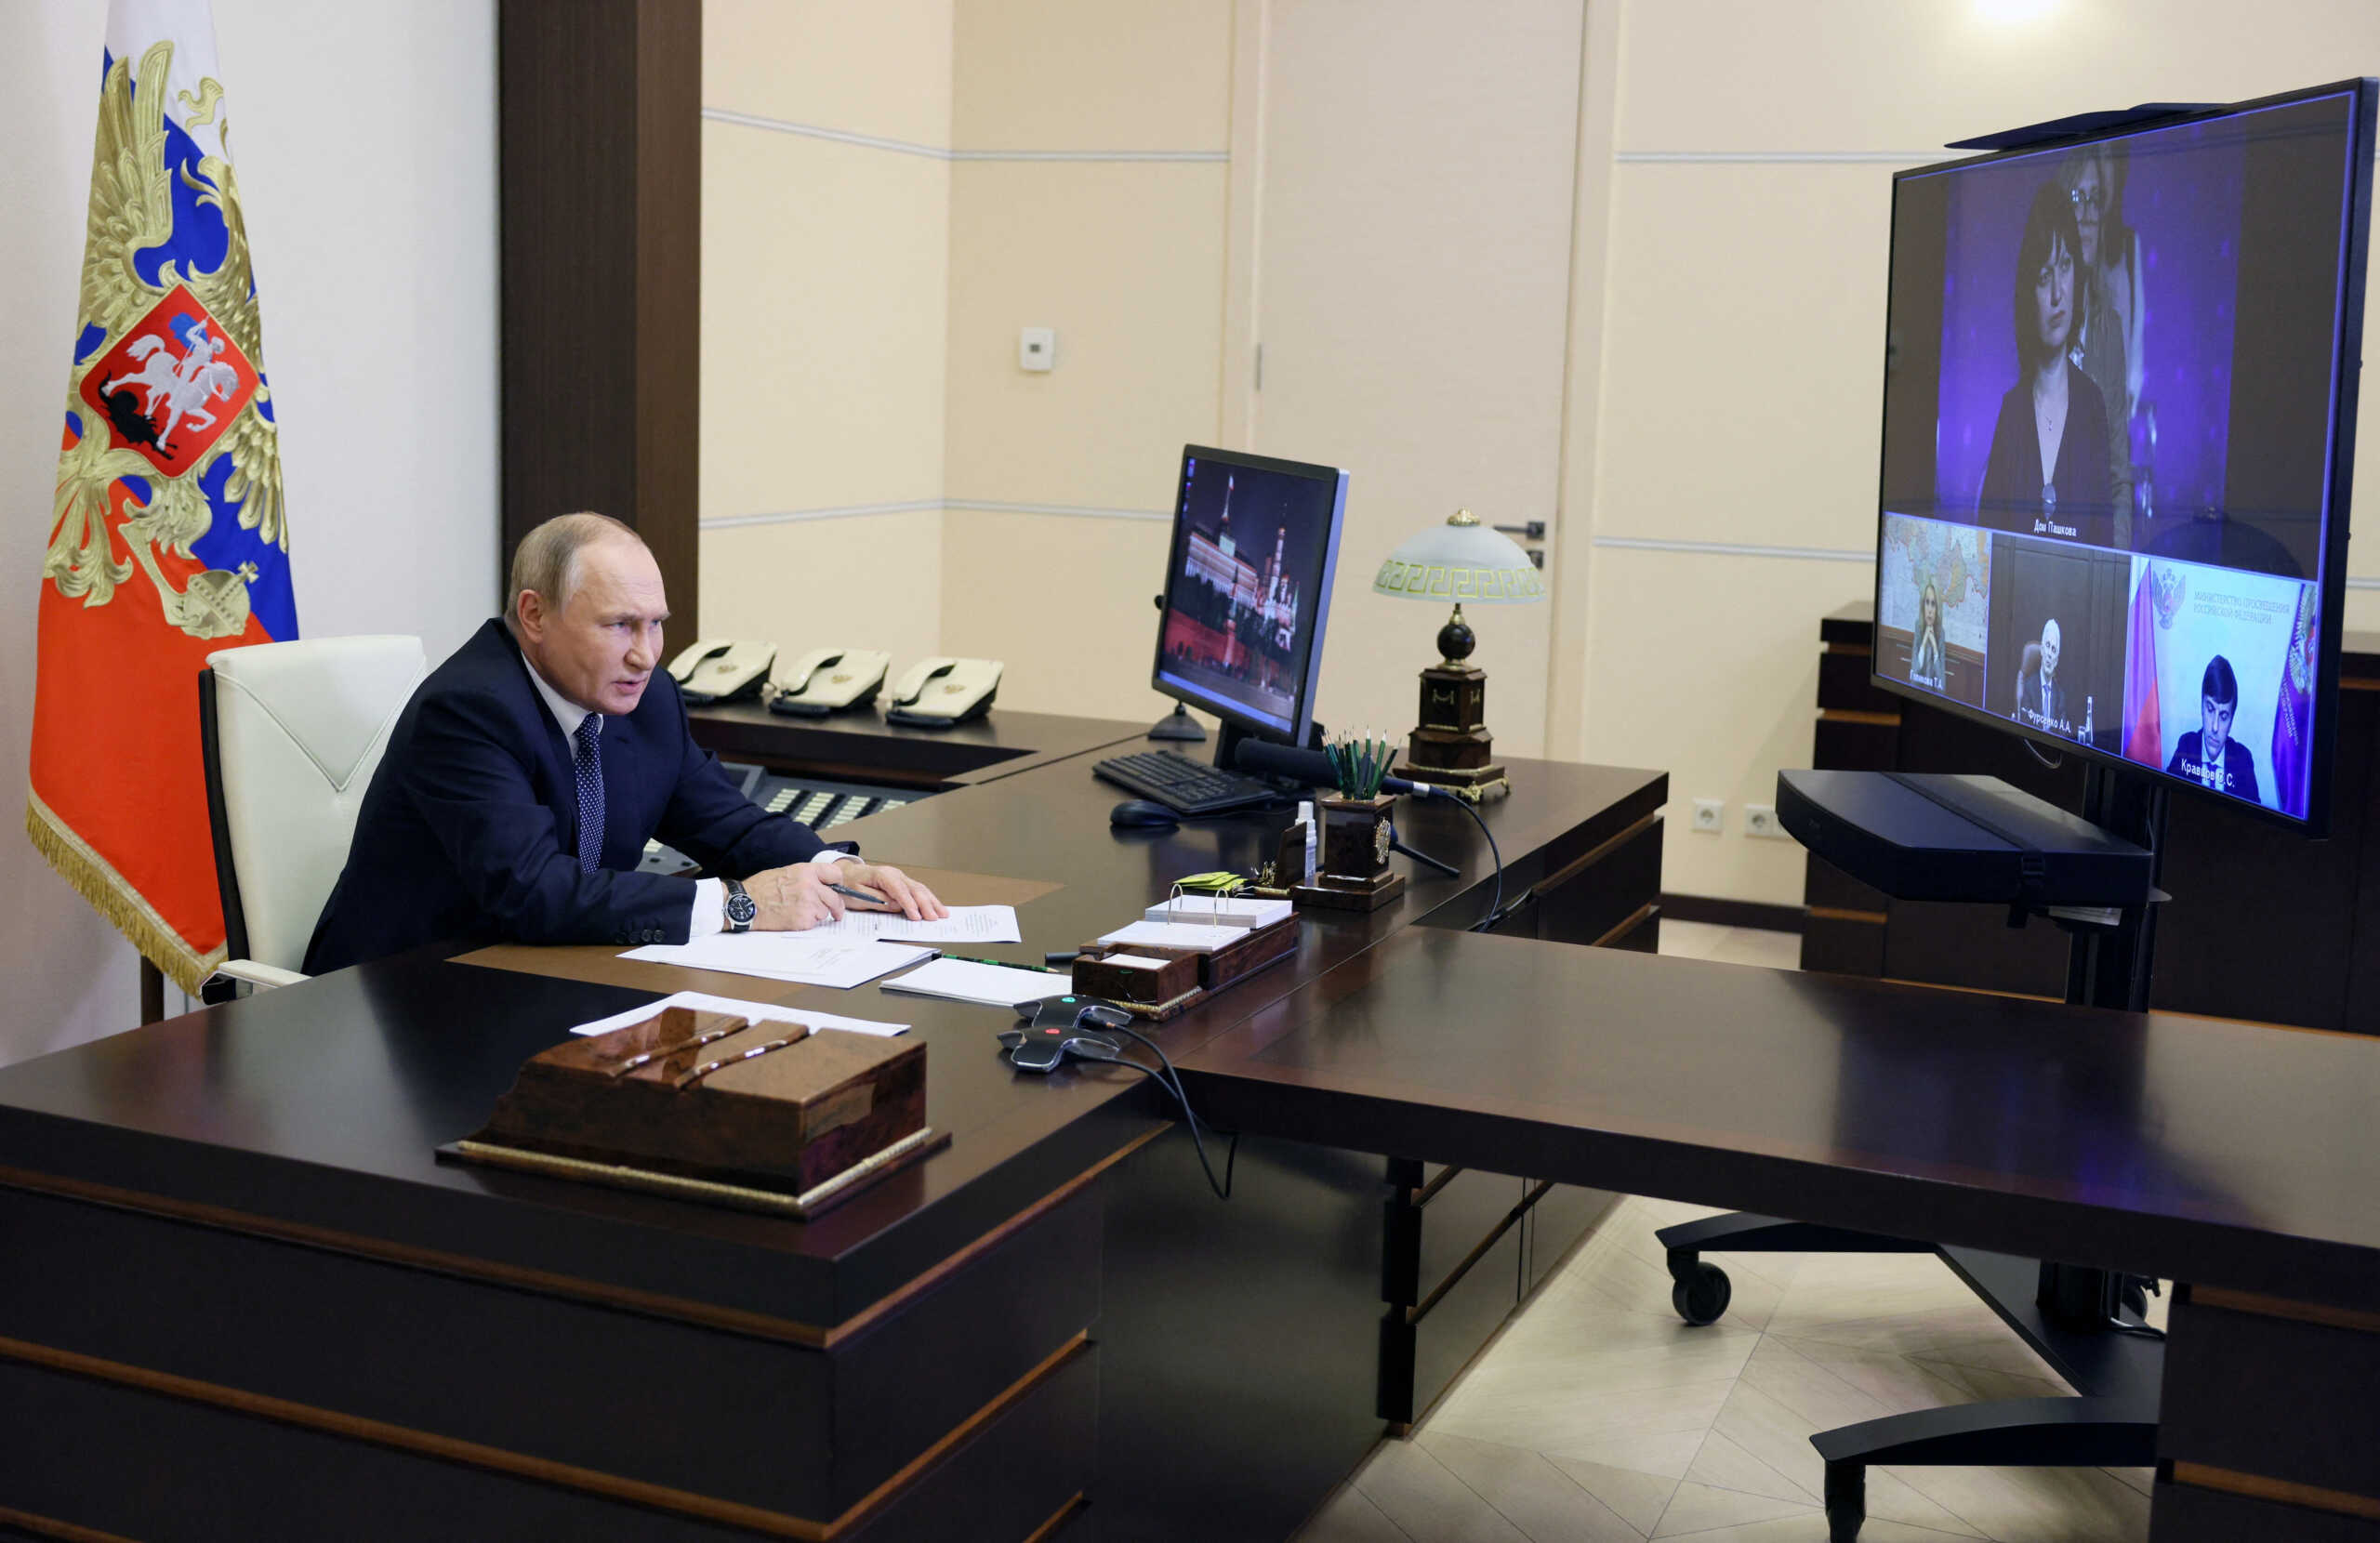 Μάθημα ιστορίας του Βλαντιμίρ Πούτιν με την Αικατερίνη τη Μεγάλη – «Το κράτος πρέπει να είναι ισχυρό»